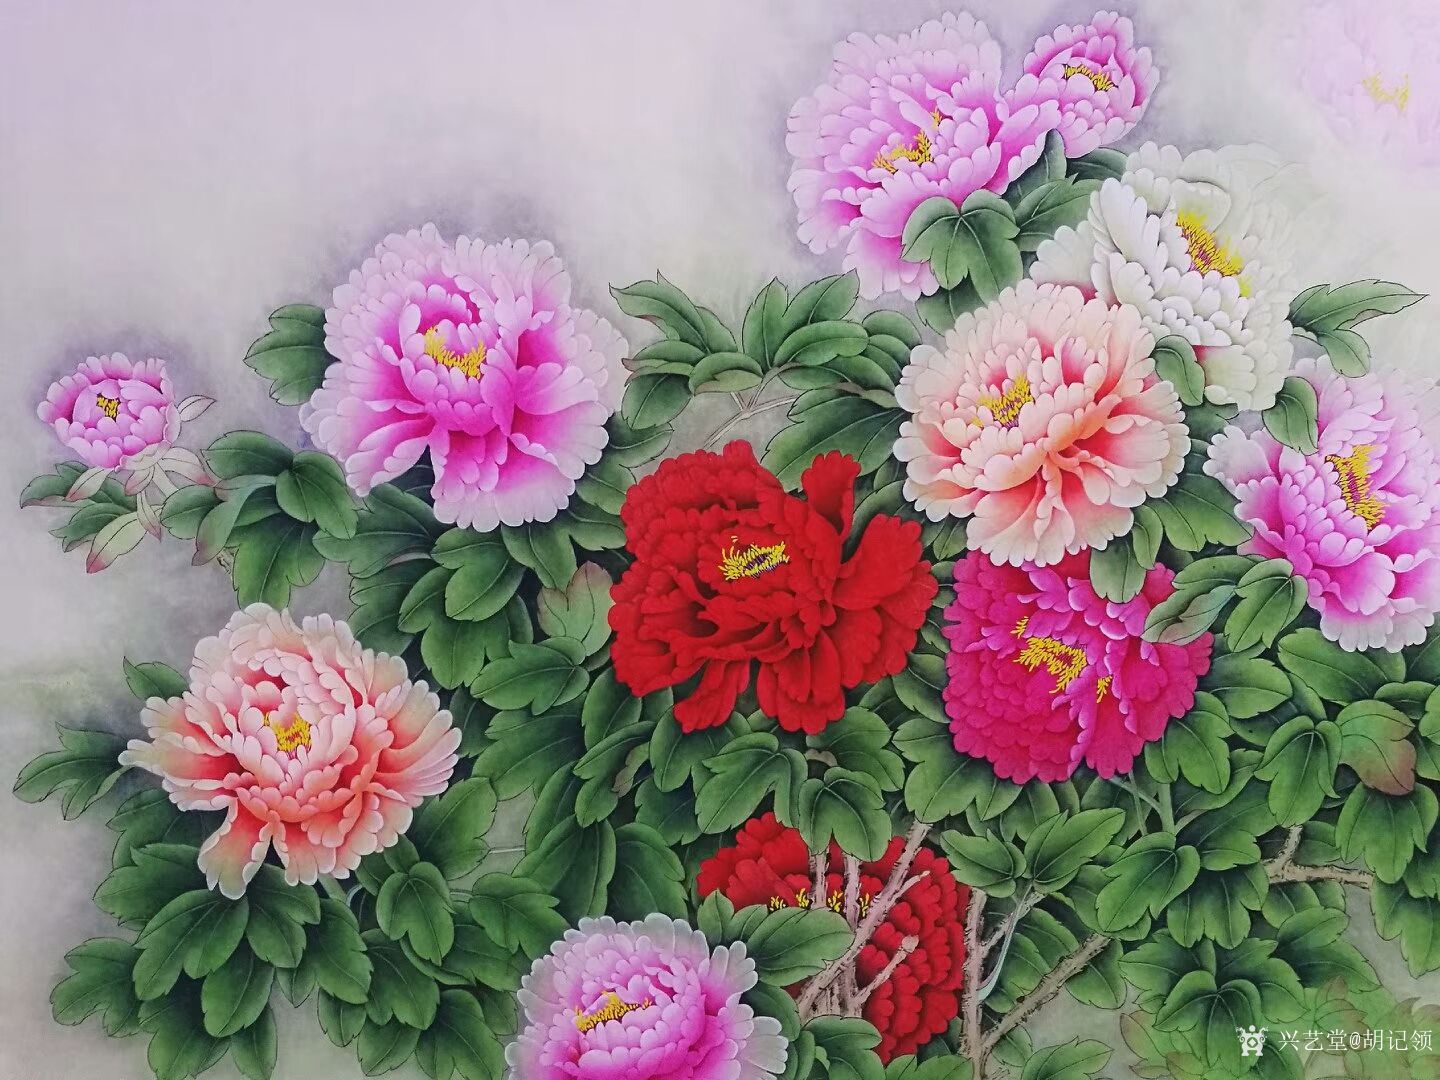 艺术家胡记领日记:国画花鸟工笔画牡丹系列《花开富贵》,尺寸六尺横幅